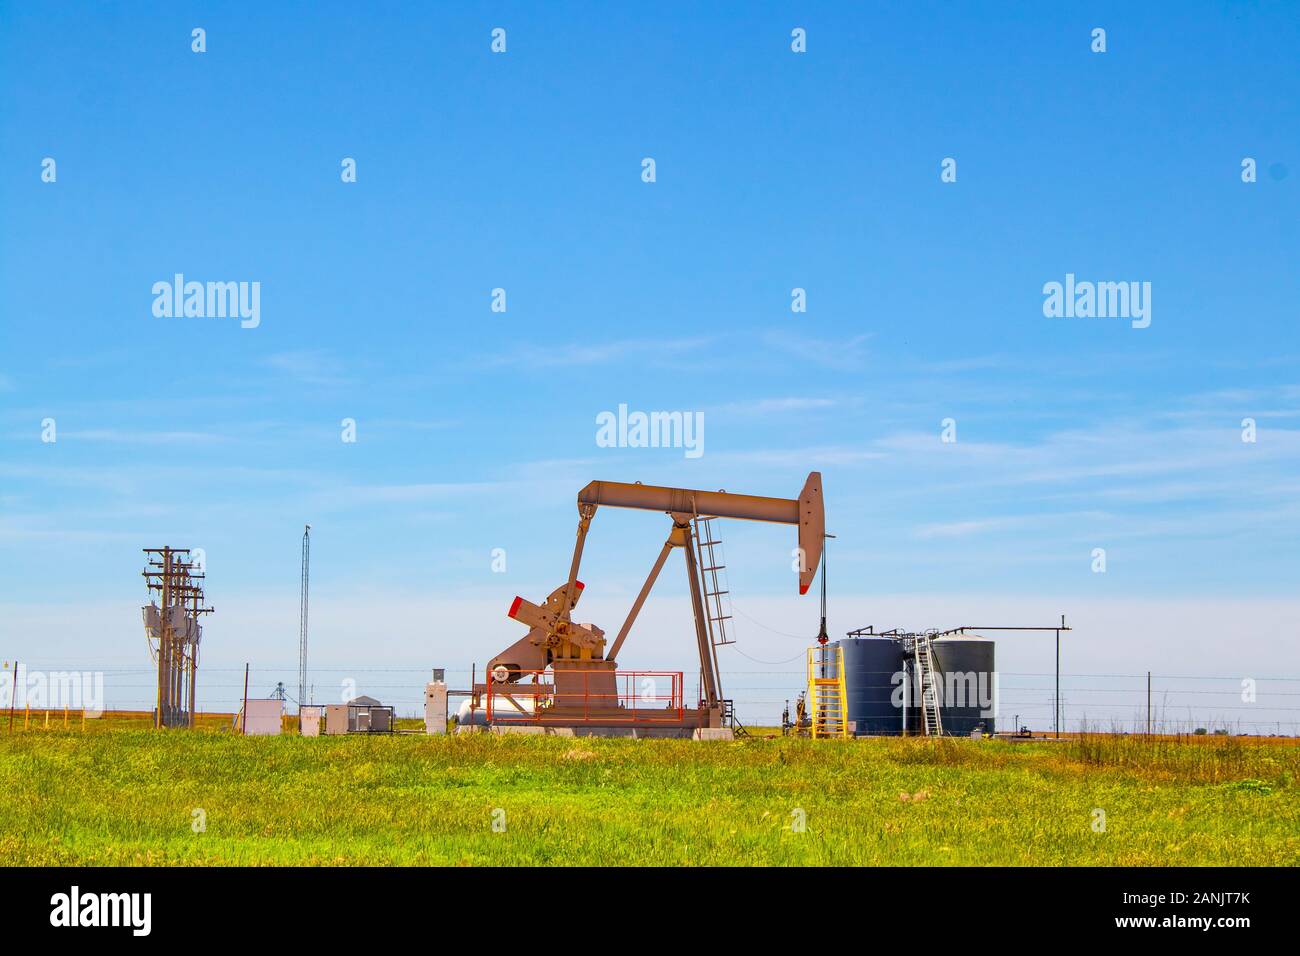 Pompa di lavoro Jack sul pozzo dell'olio con i serbatoi sul luogo fuori all'orizzonte sulle pianure con le linee elettriche ed il cielo blu in background Foto Stock